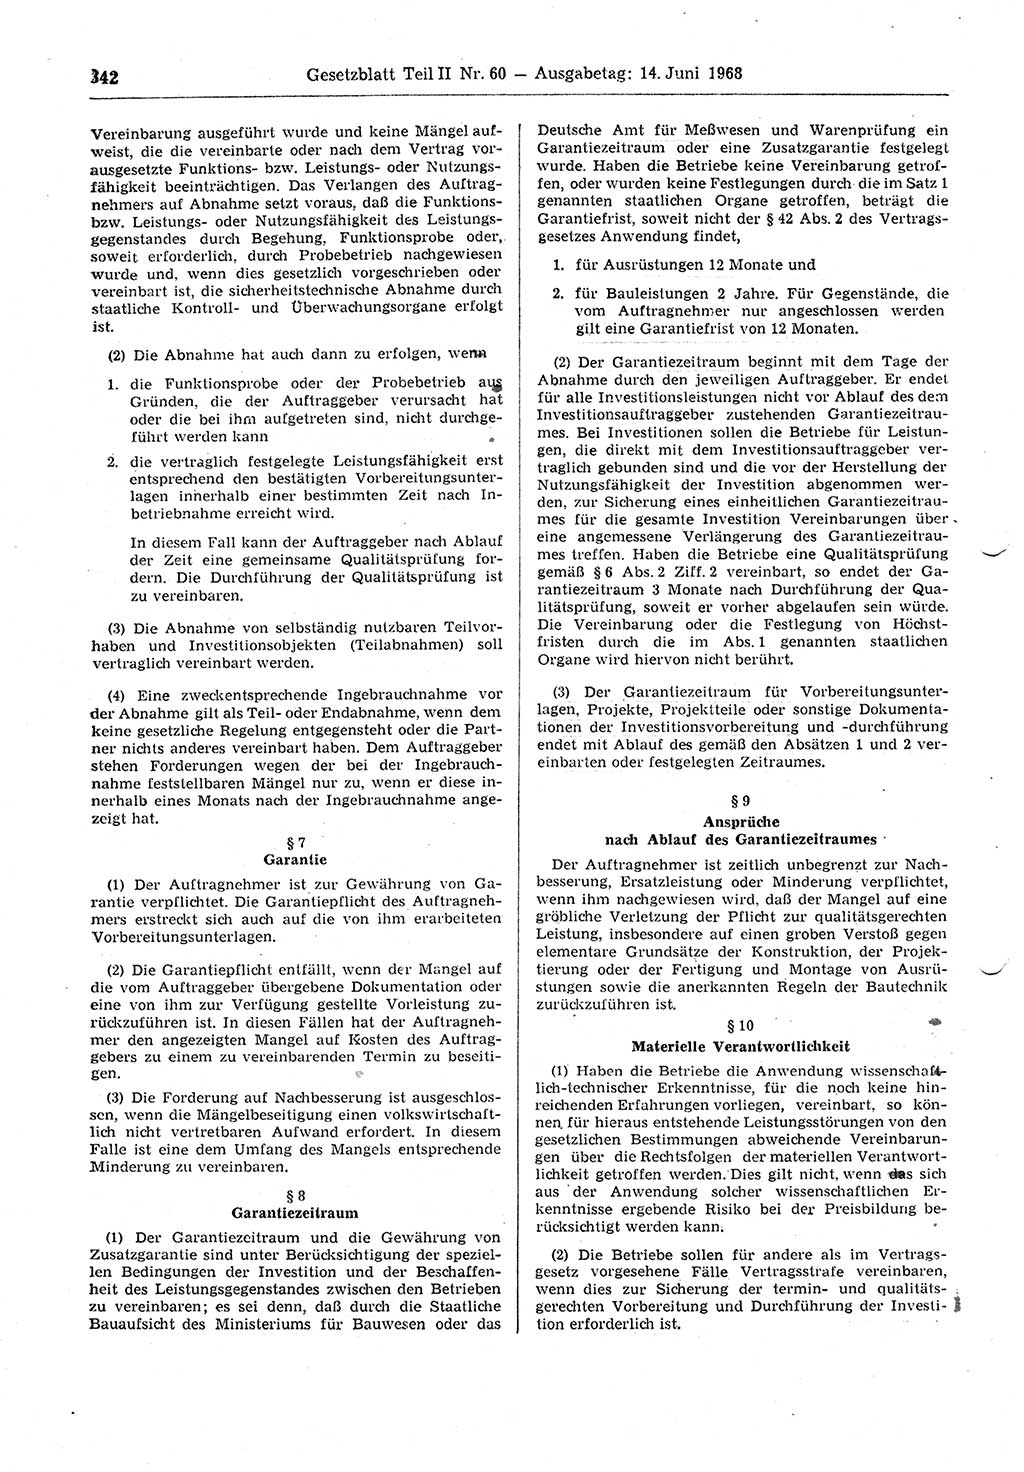 Gesetzblatt (GBl.) der Deutschen Demokratischen Republik (DDR) Teil ⅠⅠ 1968, Seite 342 (GBl. DDR ⅠⅠ 1968, S. 342)